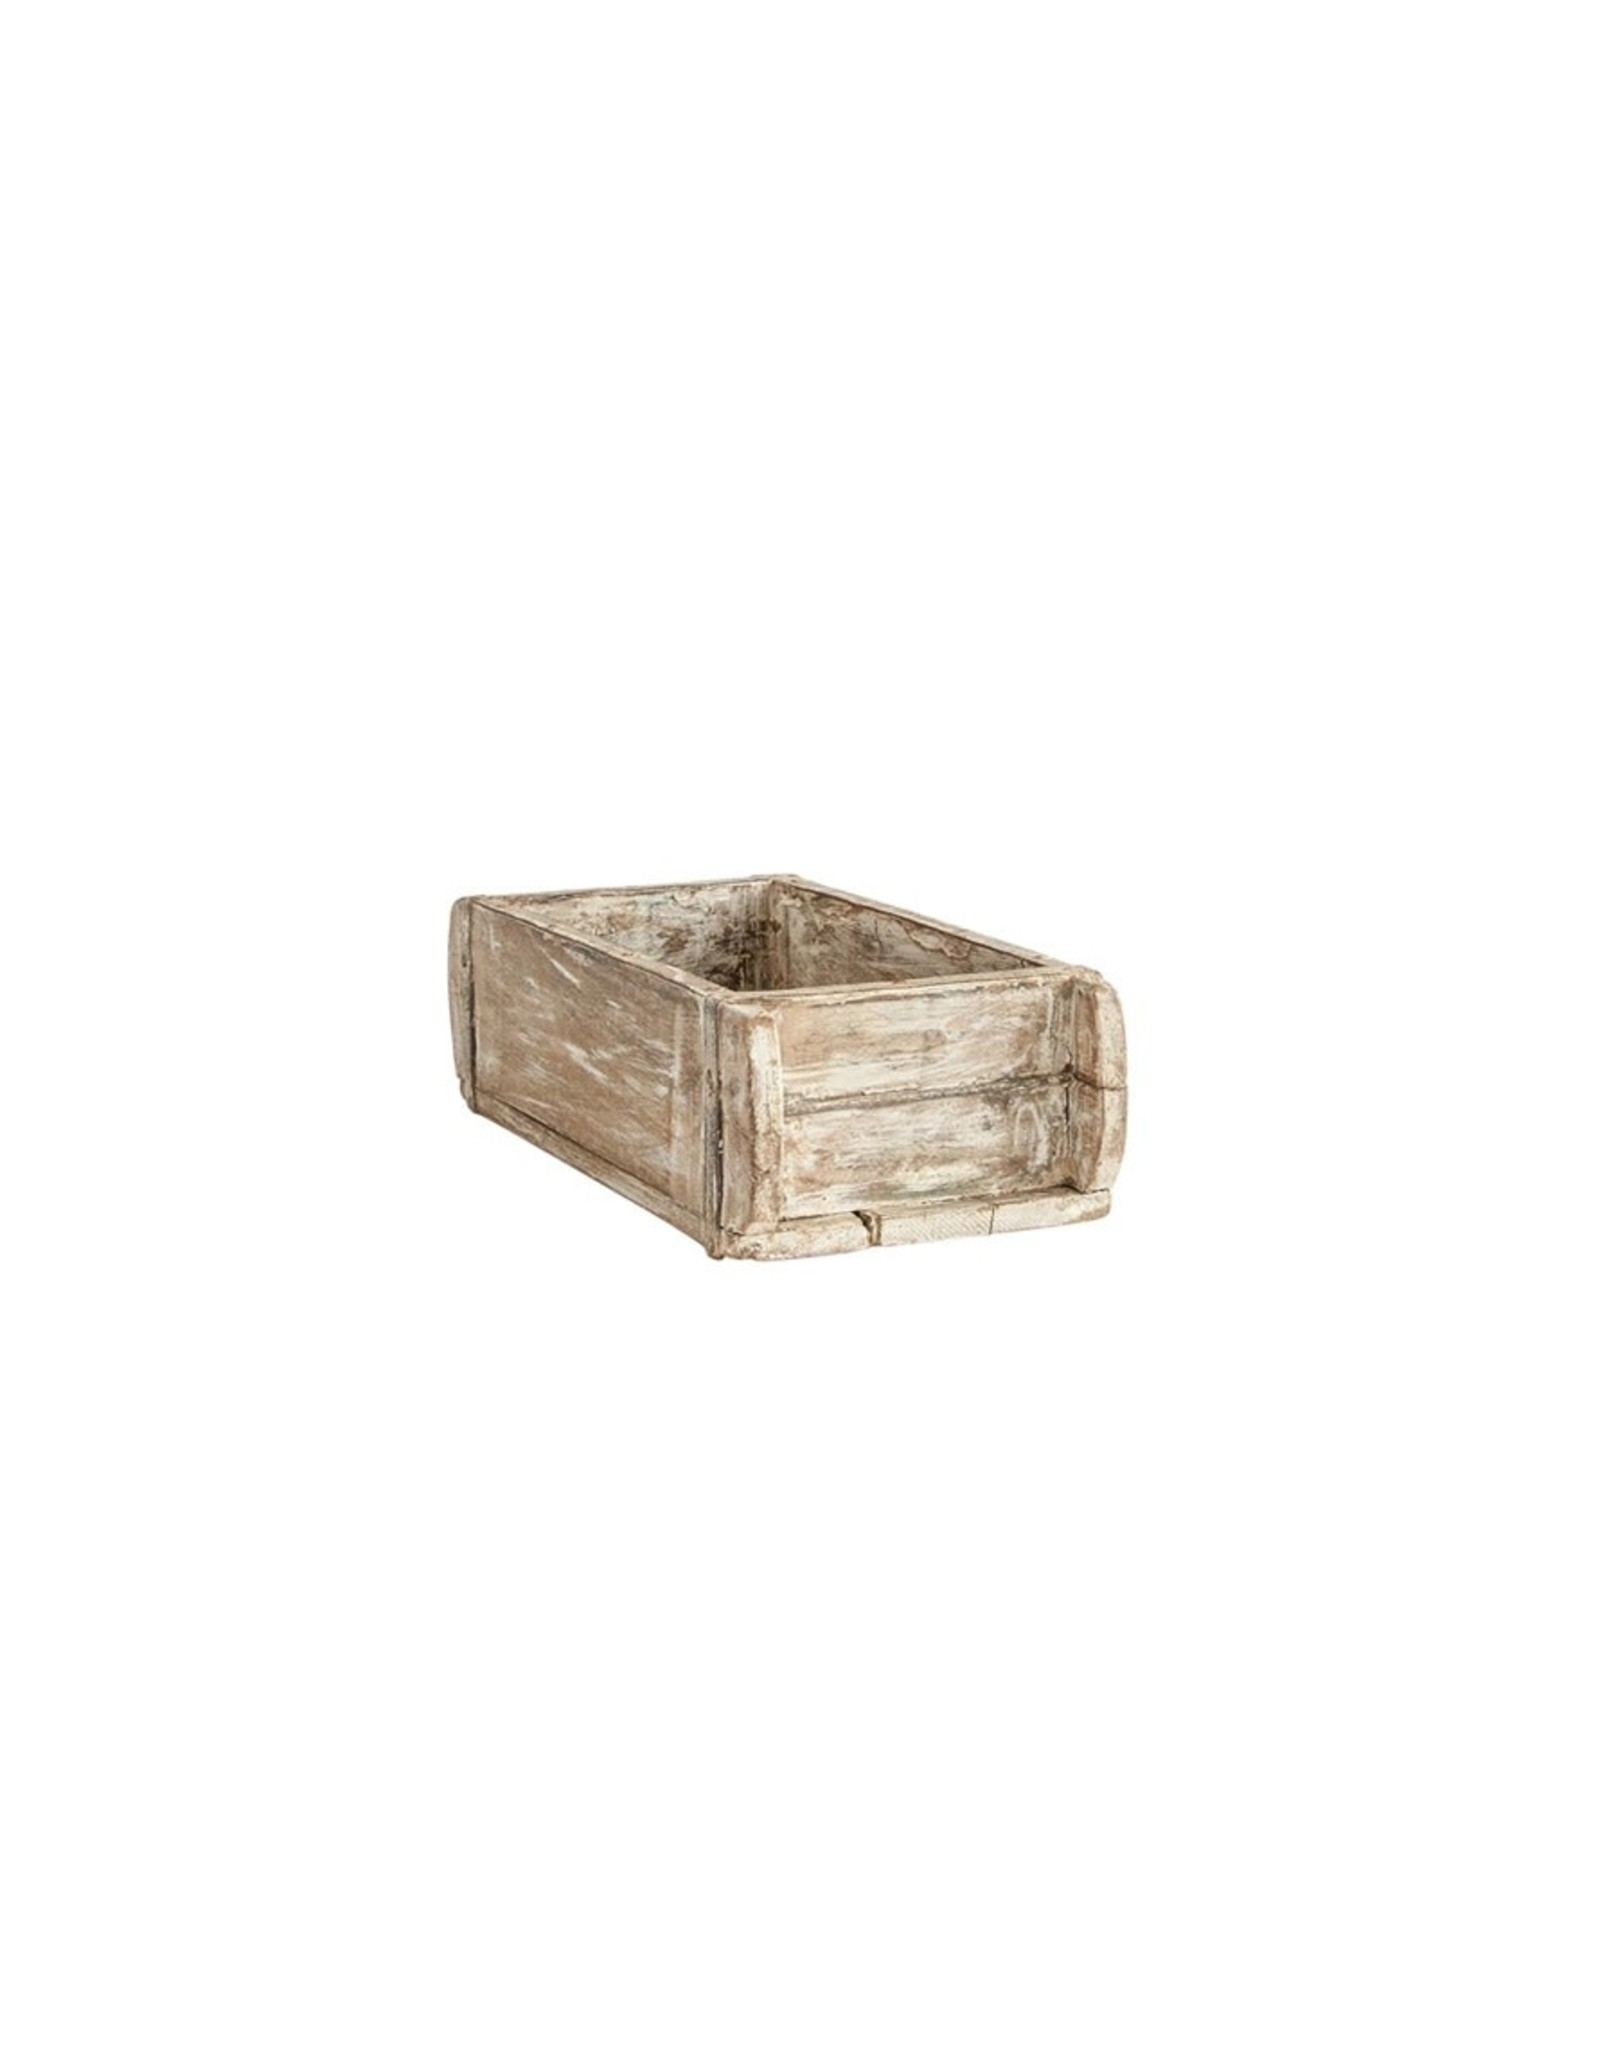 Found Wood Brick Mold White DF1575